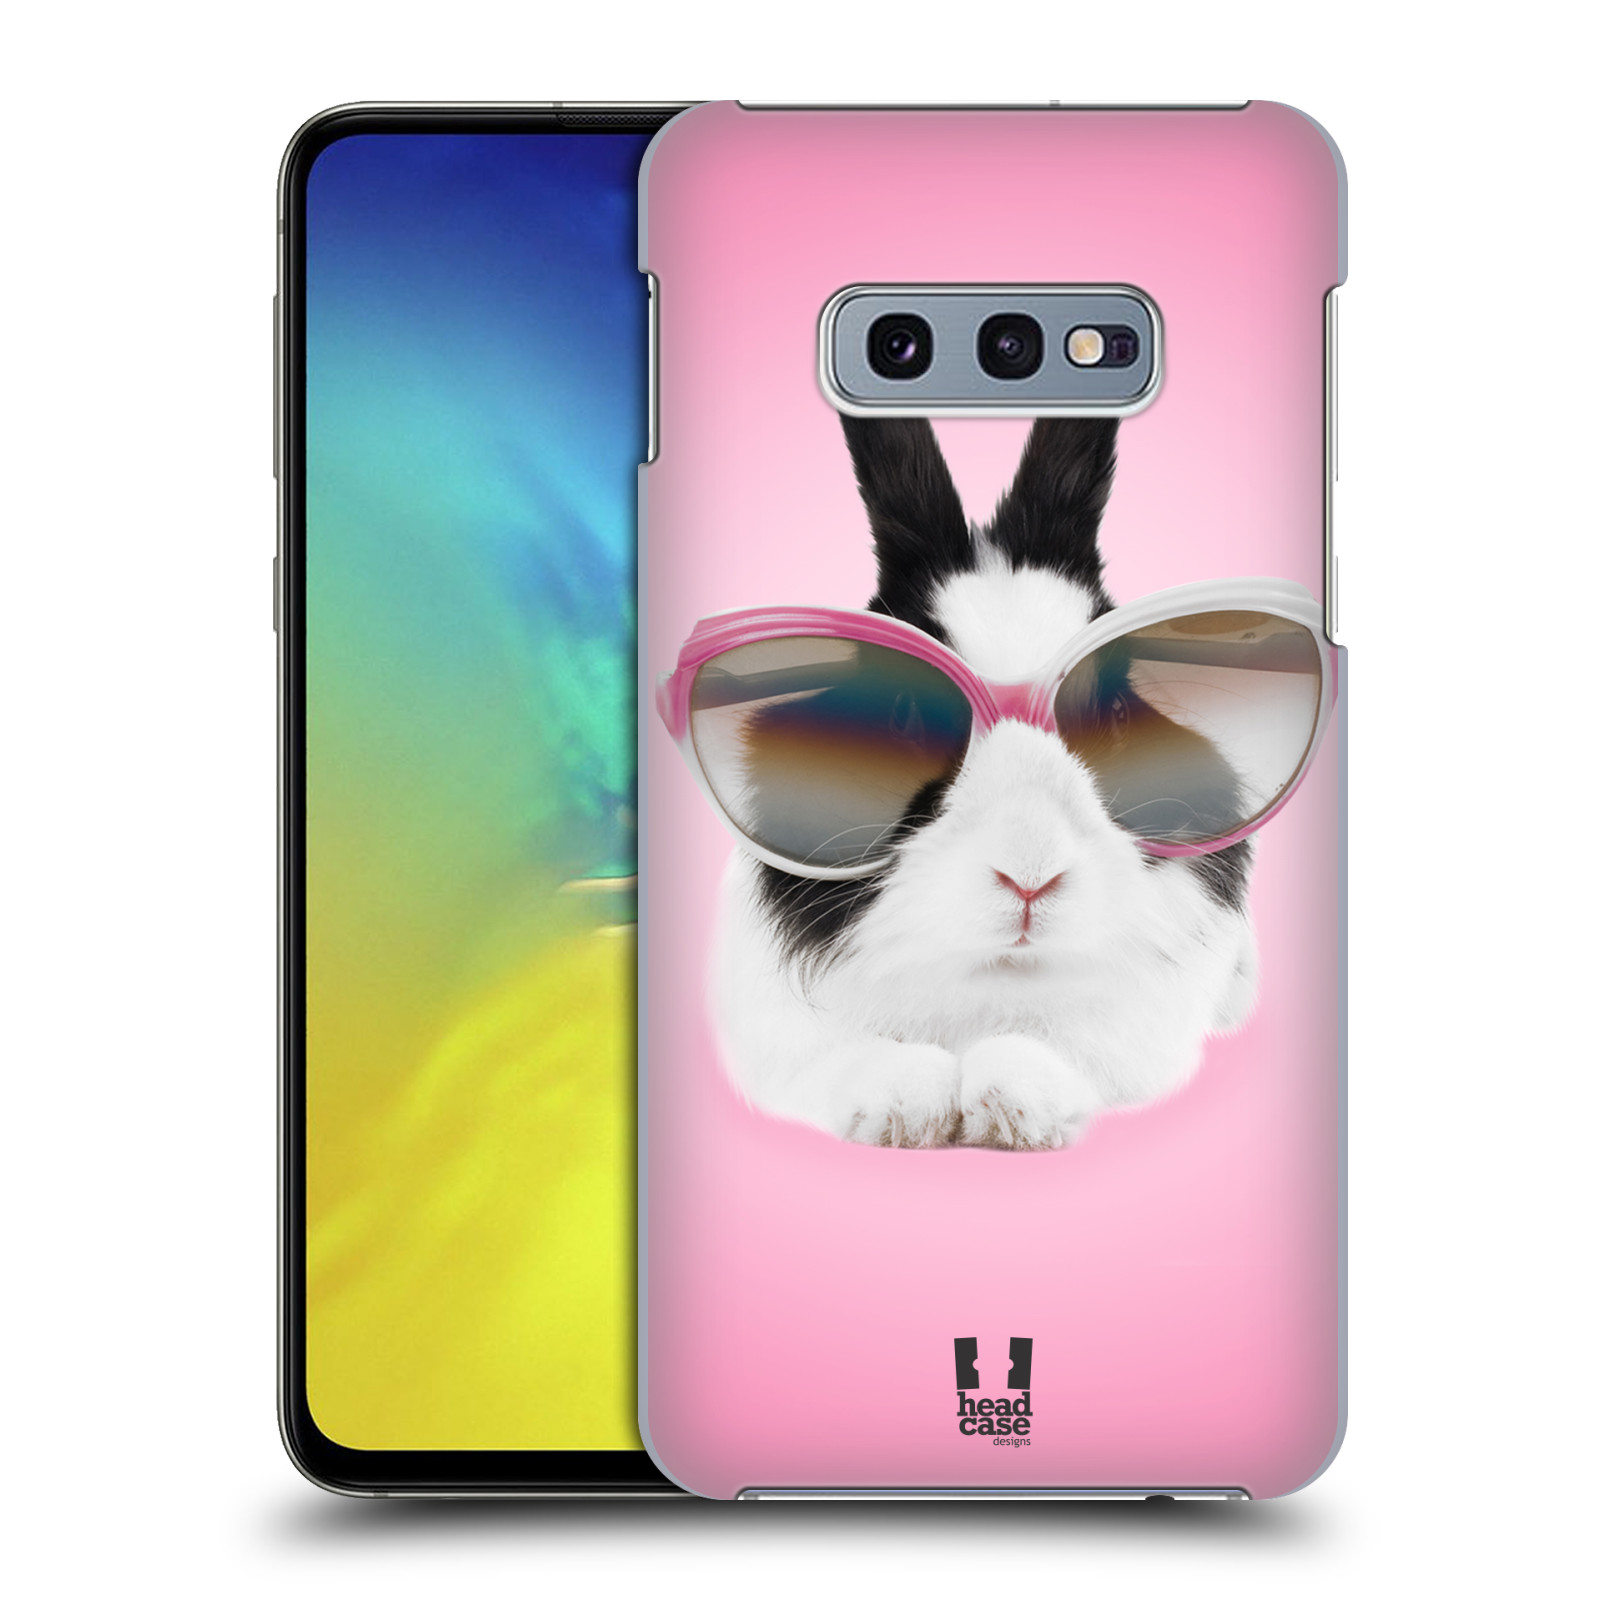 Pouzdro na mobil Samsung Galaxy S10e - HEAD CASE - vzor Legrační zvířátka roztomilý králíček s brýlemi růžová